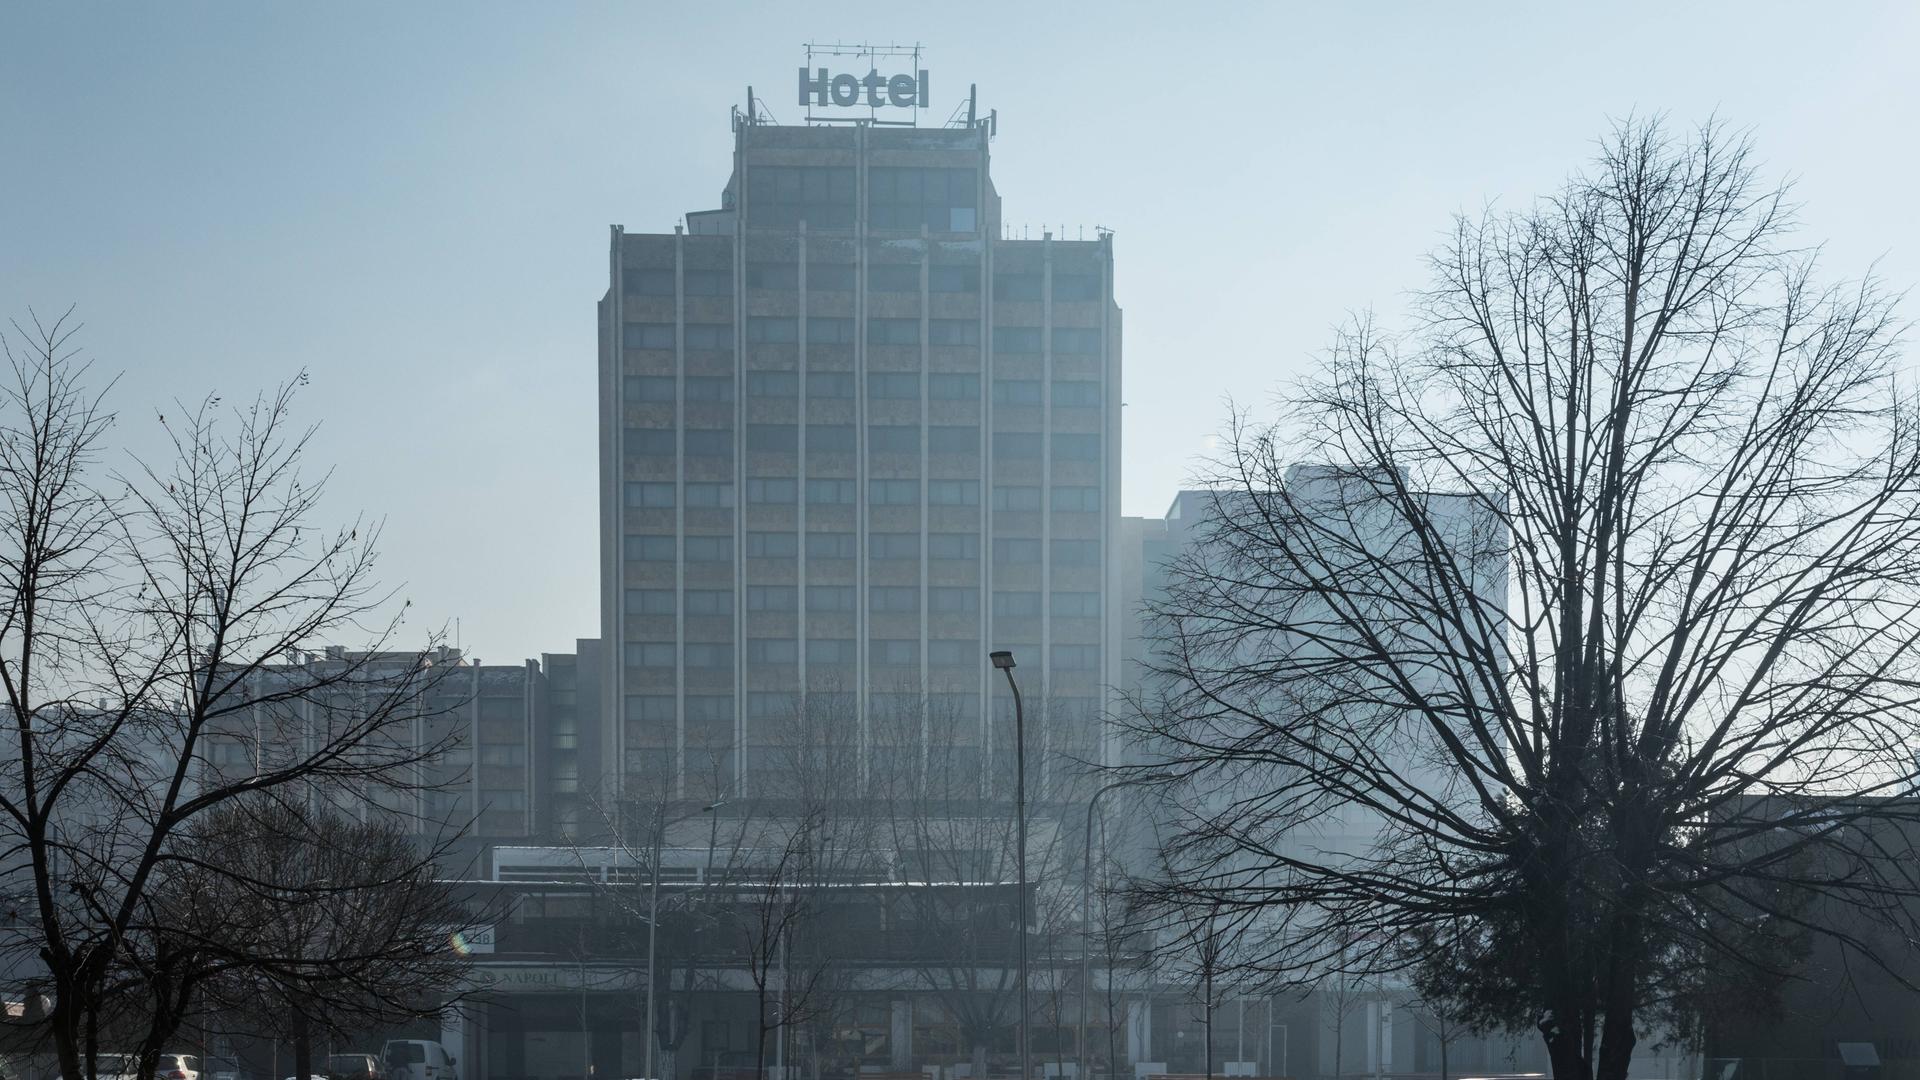 Ein tristes Hochhaus mit der Aufschrift "Hotel" auf dem Dach steht in einer verschneiten Stadt.